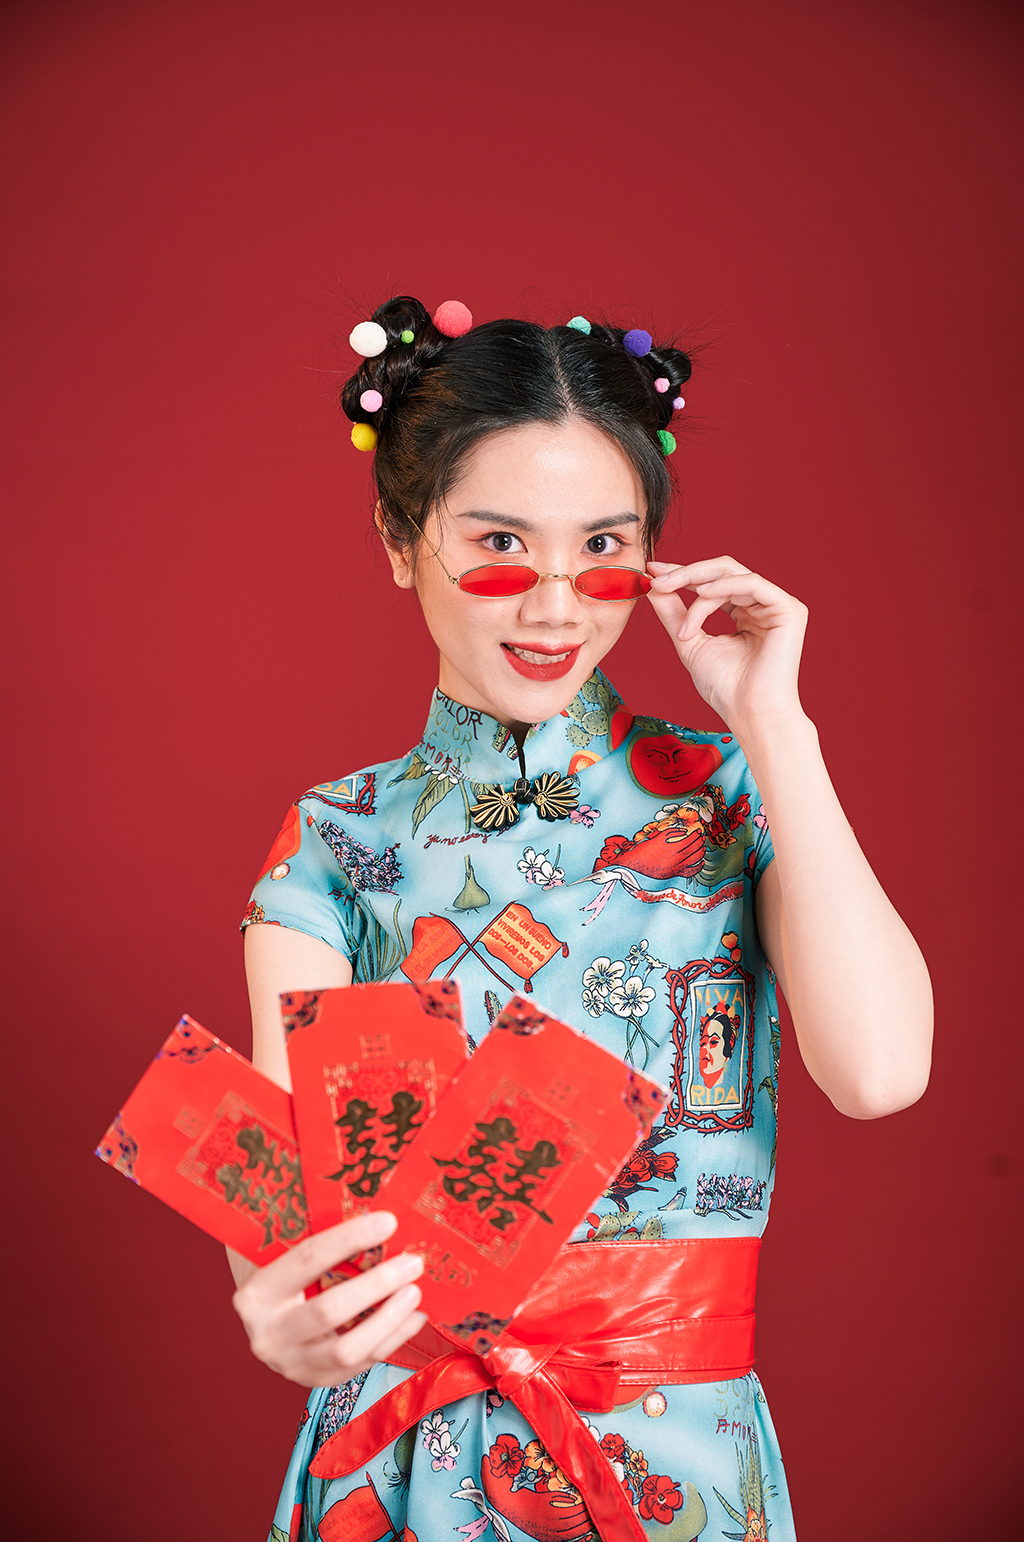 旗袍国潮美女创意红包造型商业摄影图